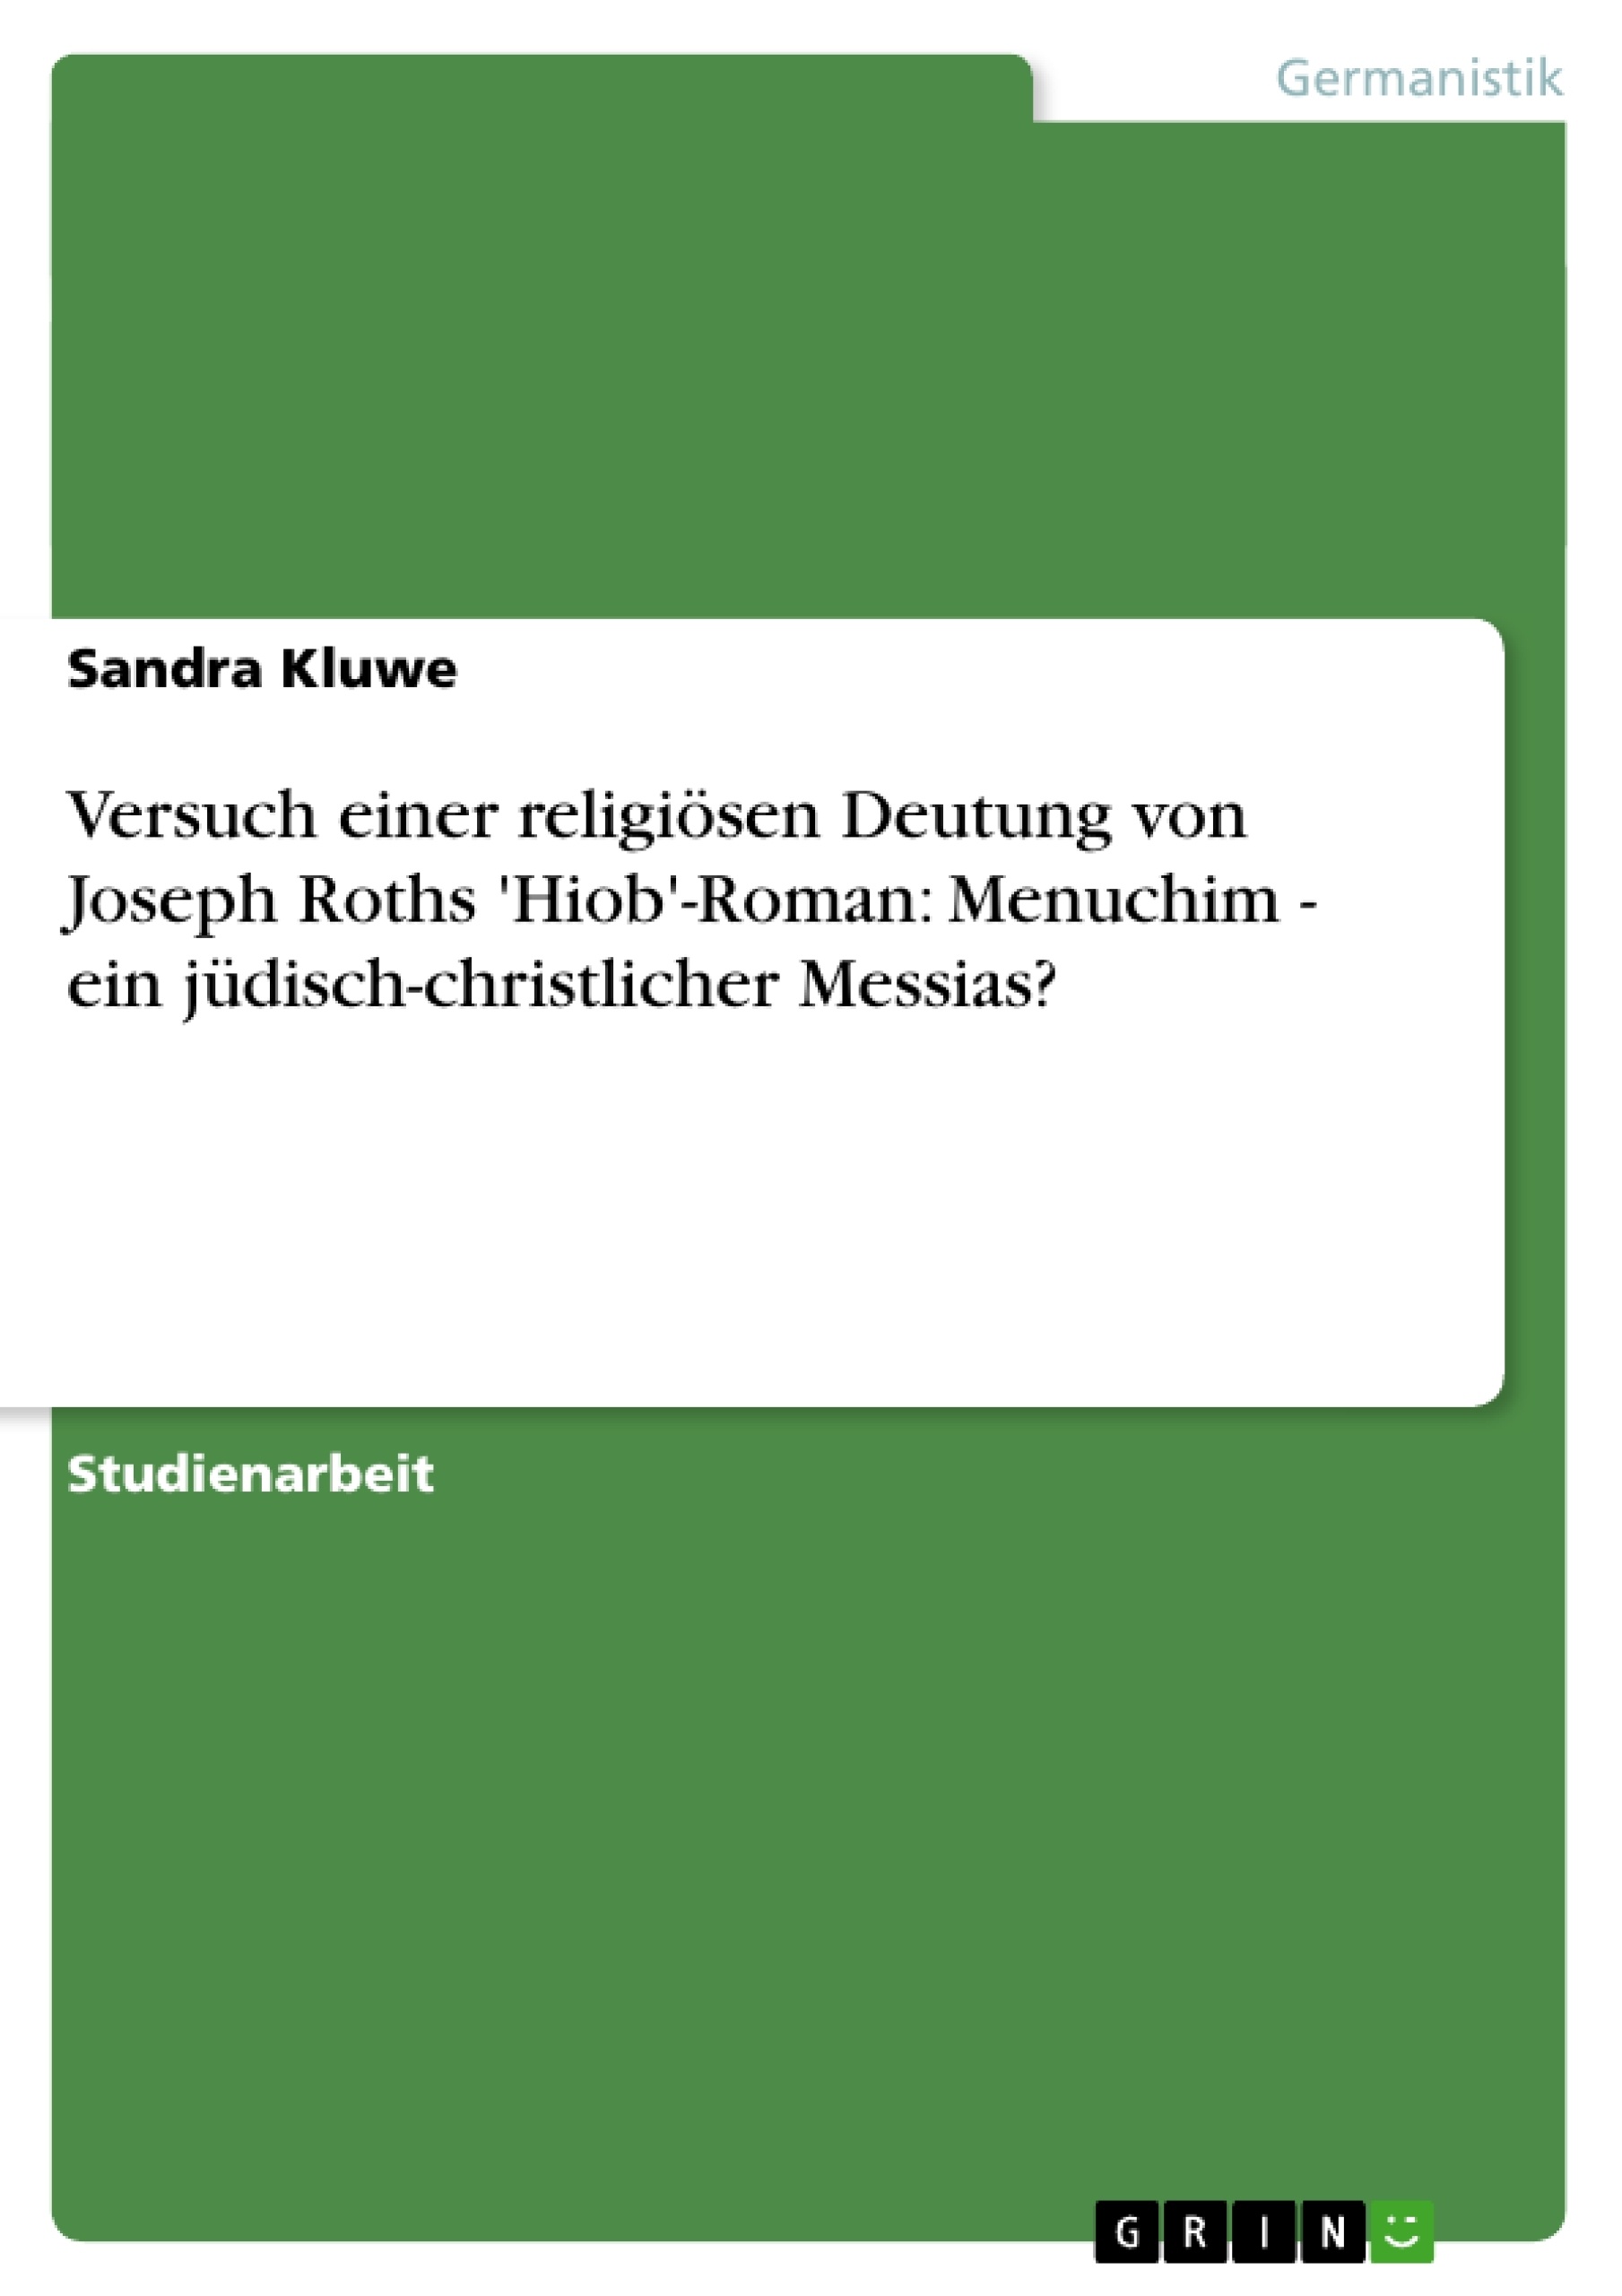 Titre: Versuch einer religiösen Deutung von Joseph Roths 'Hiob'-Roman: Menuchim - ein jüdisch-christlicher Messias?